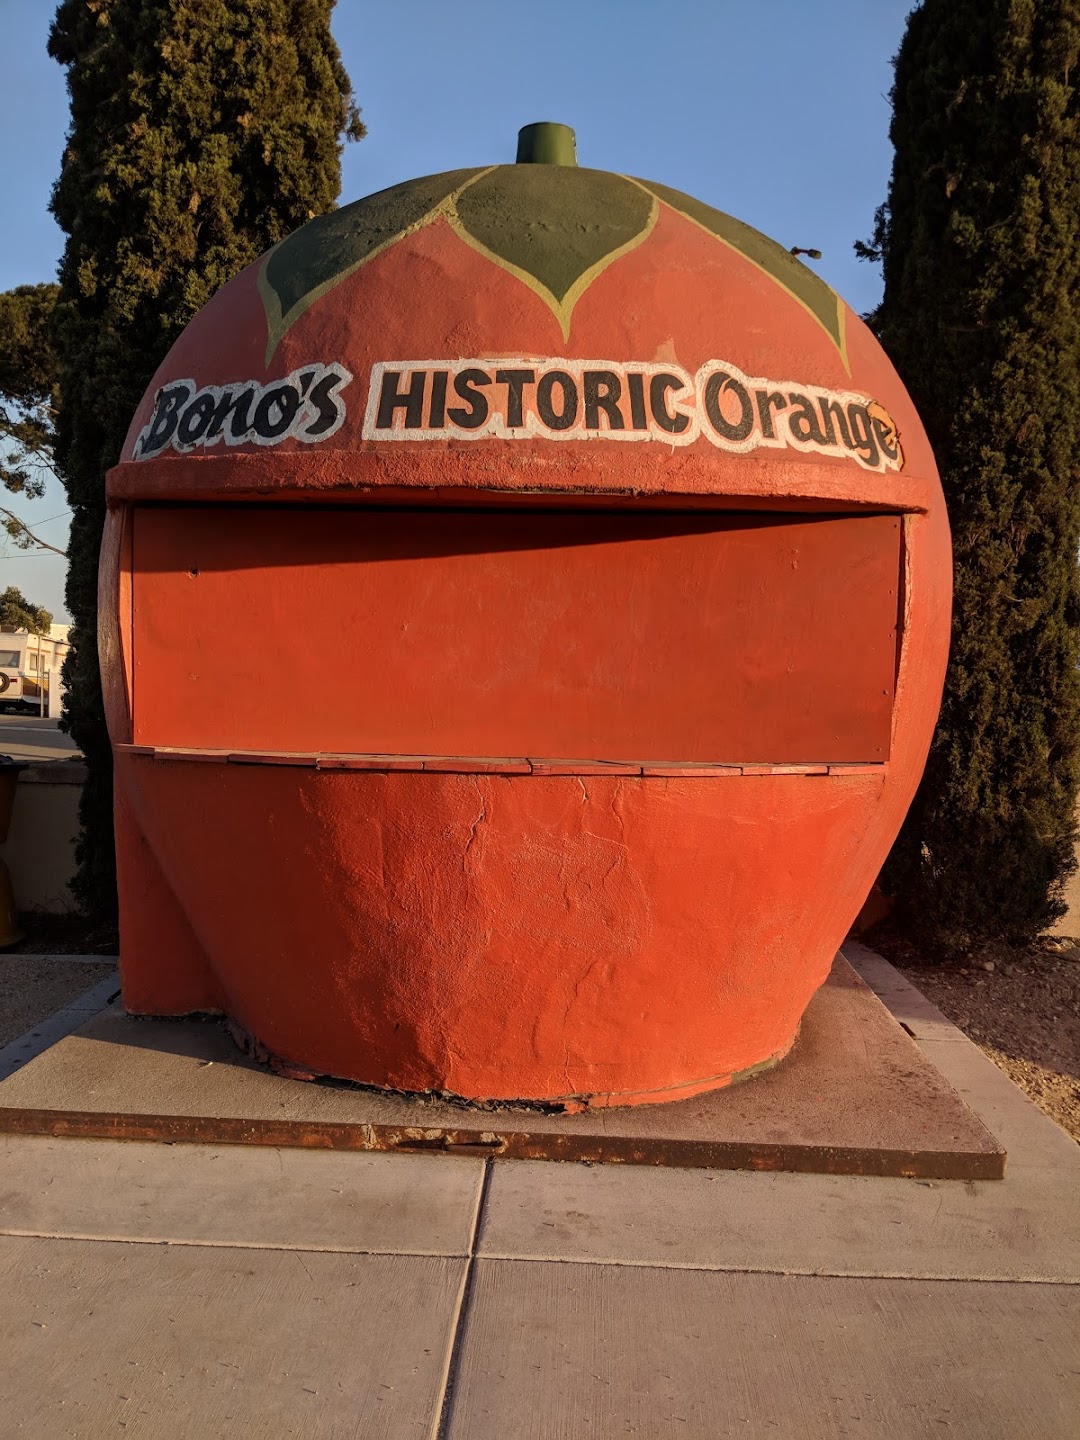 Bonos Historic Orange